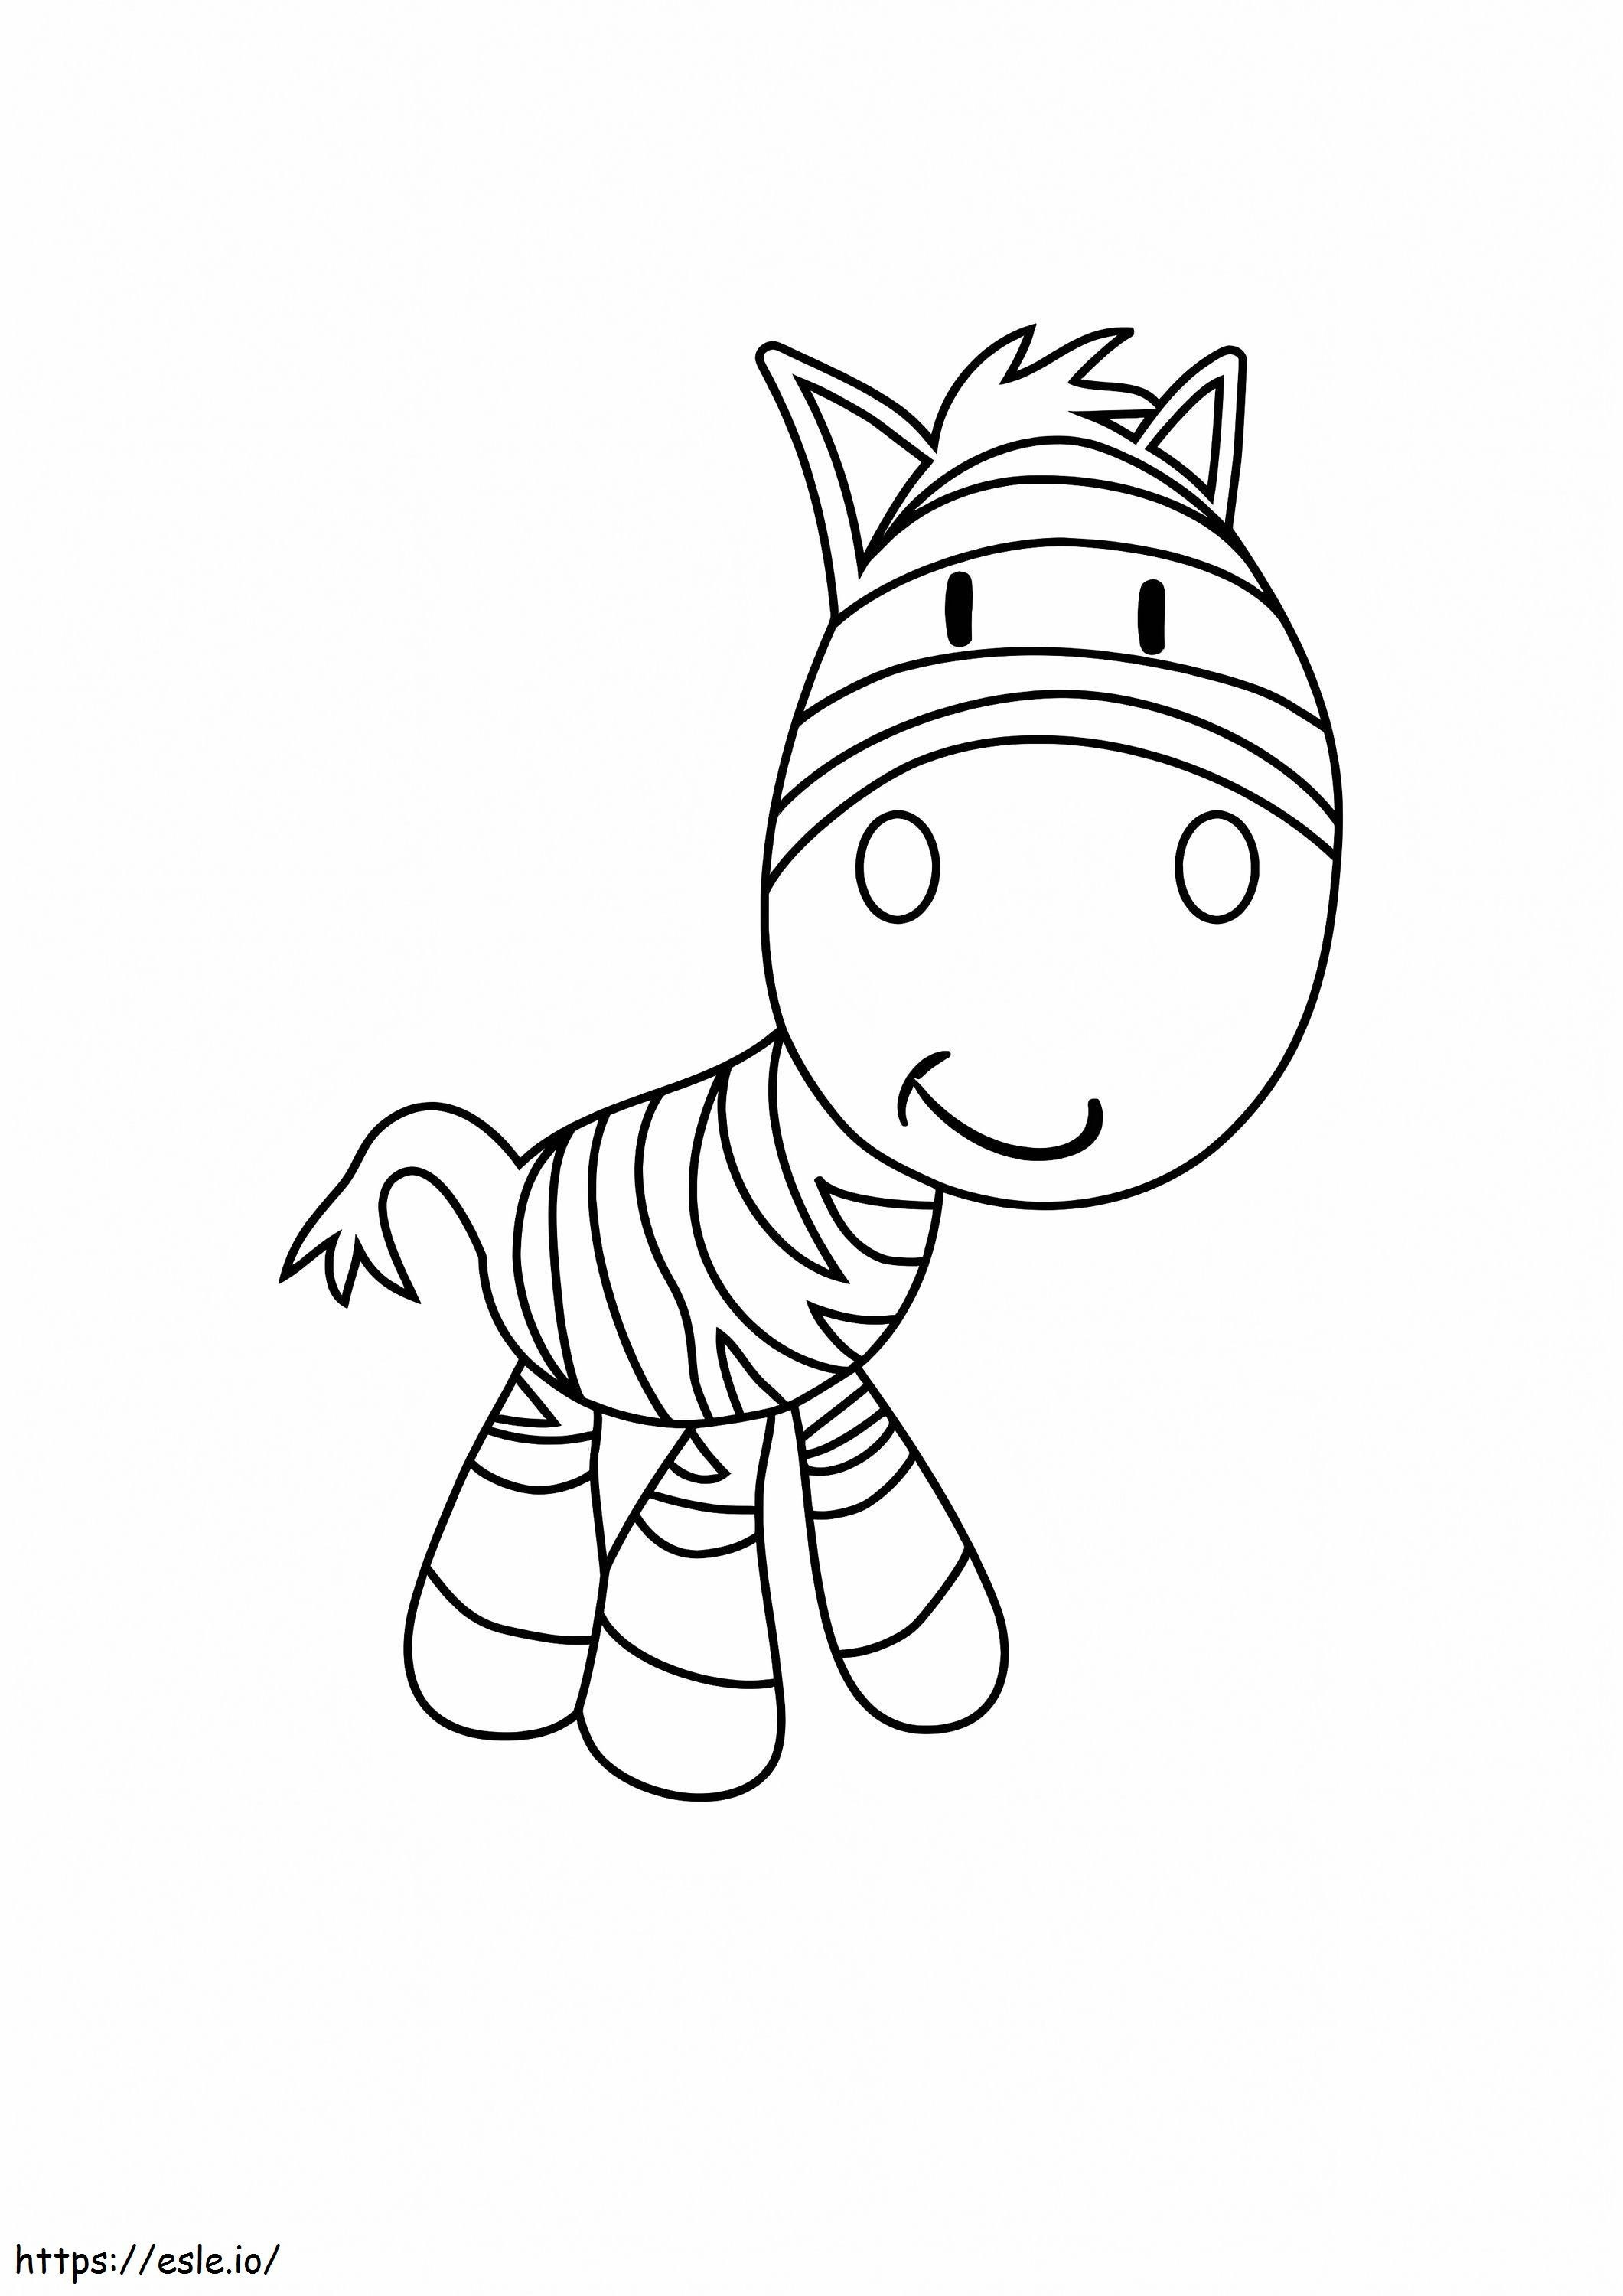 Zebra sorridente de desenho animado para colorir